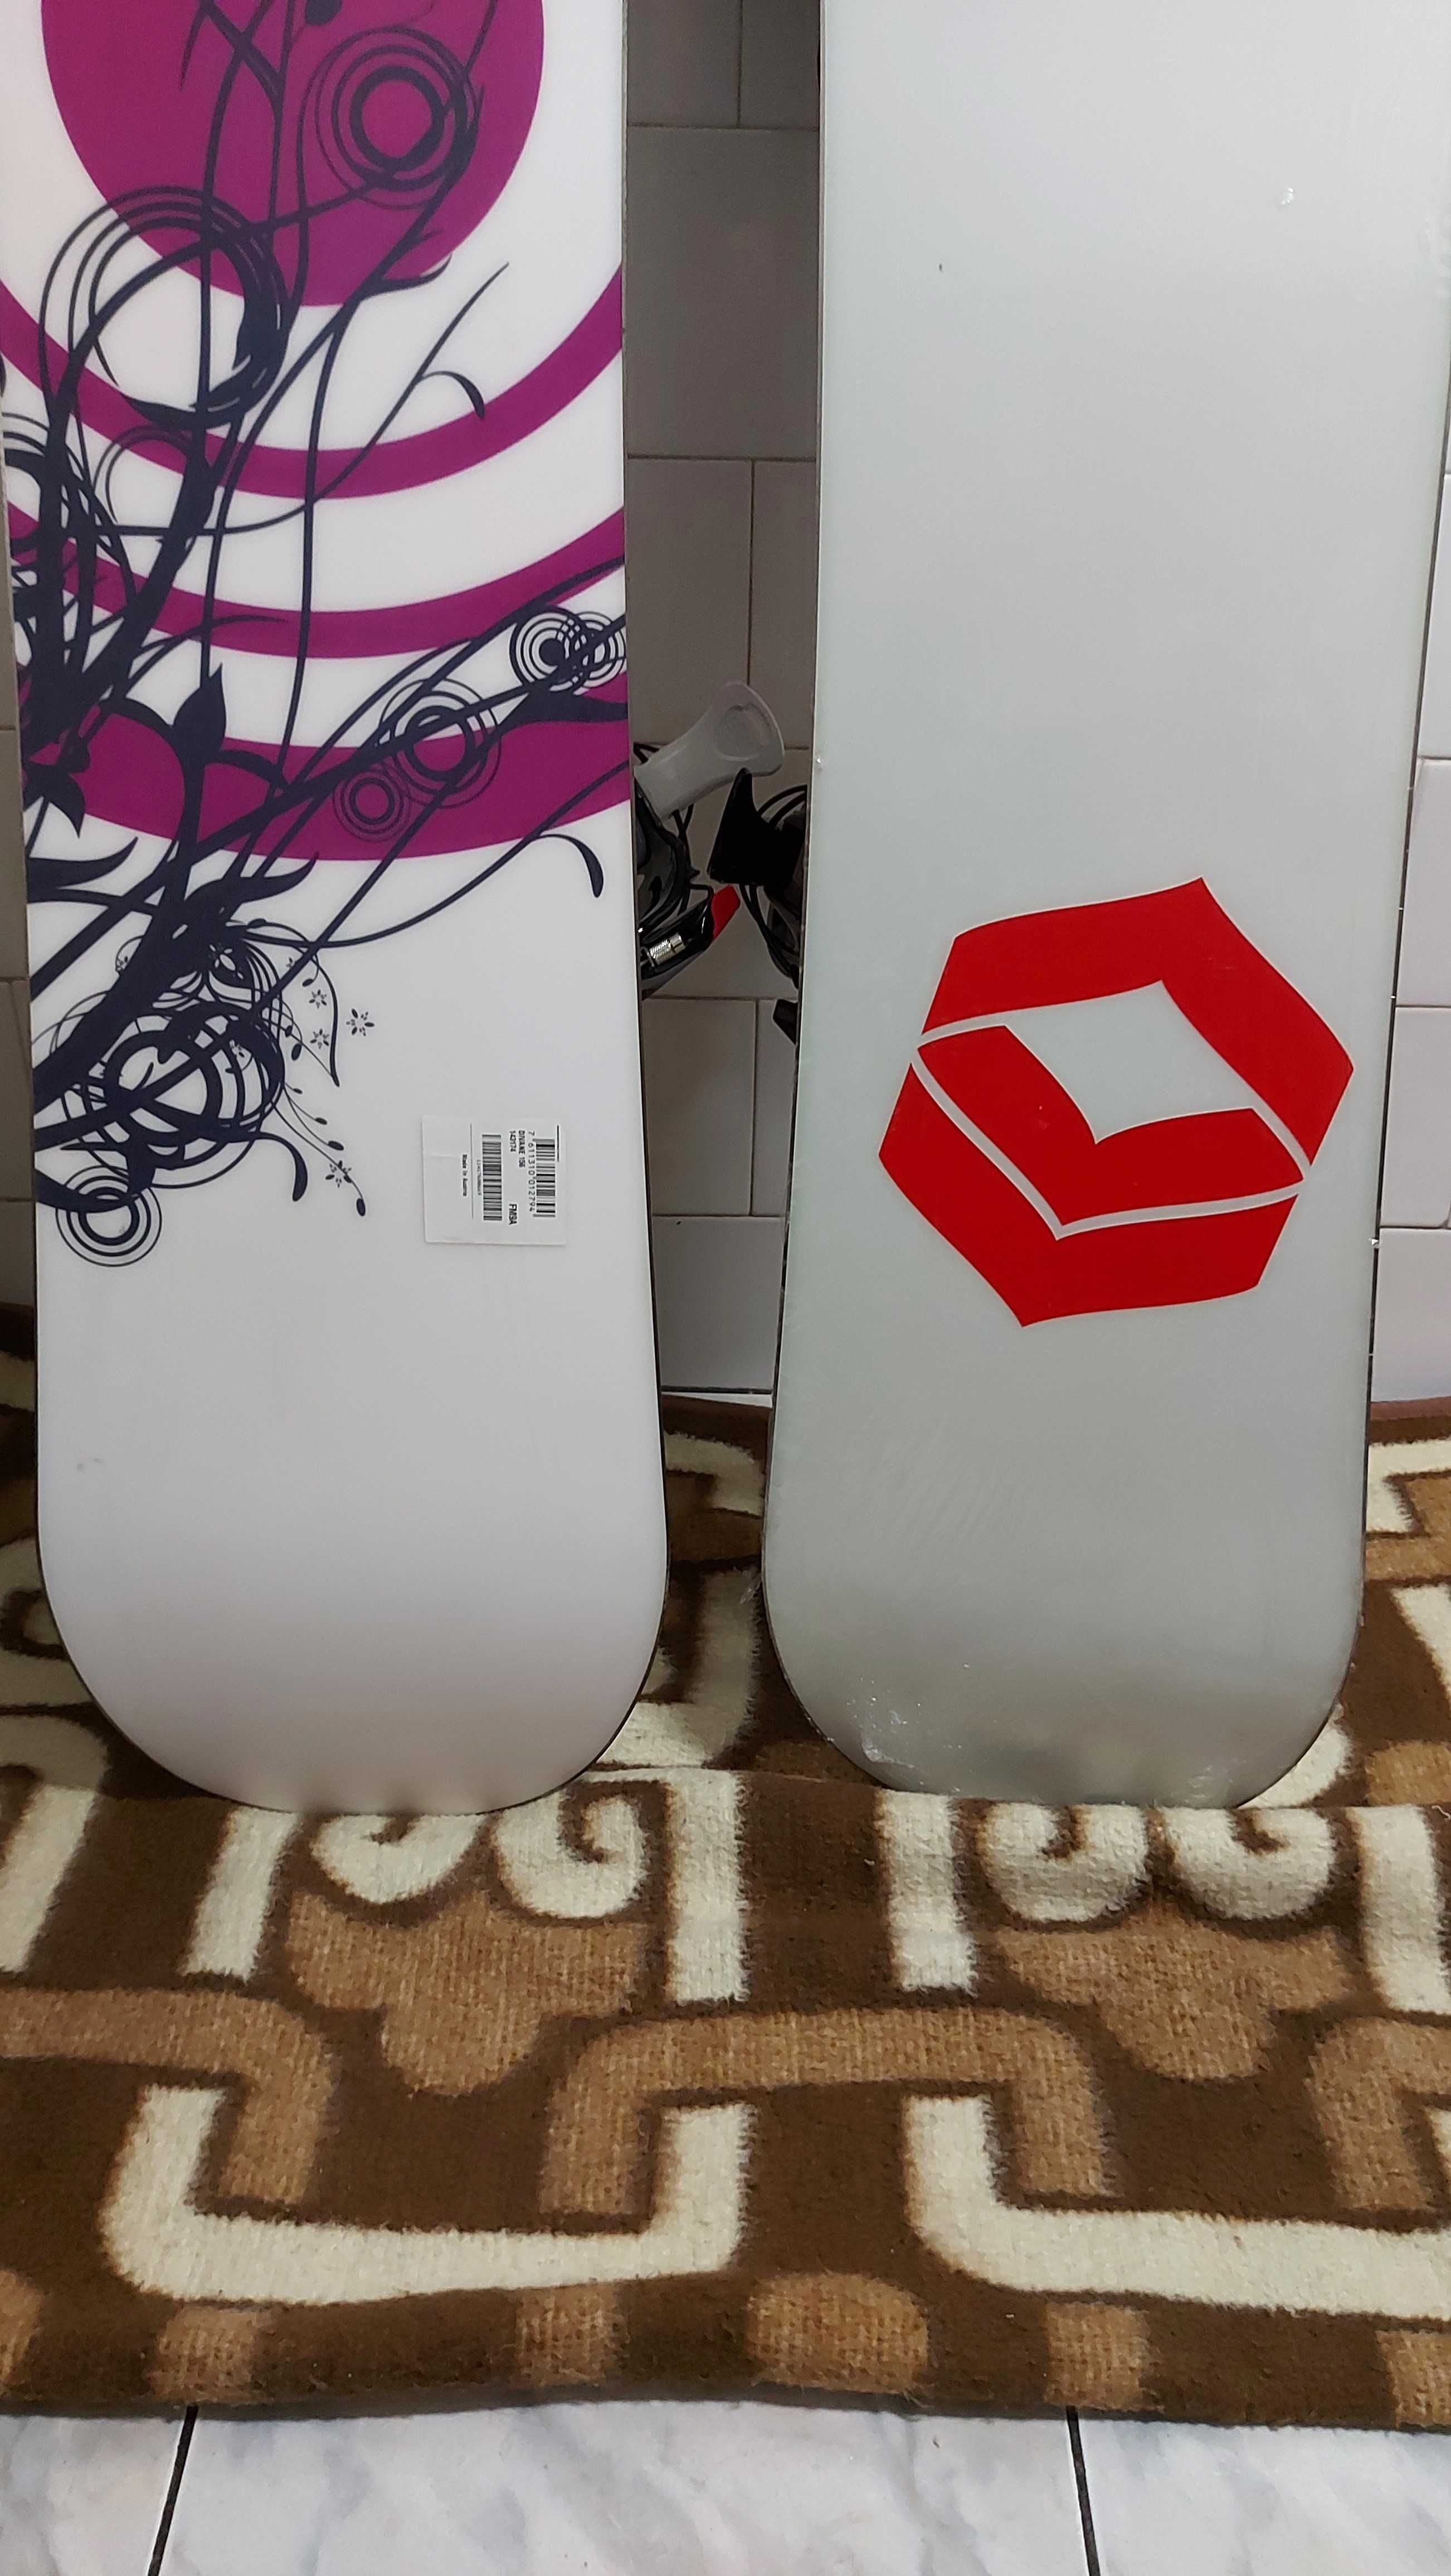 Placi placa noua noi snowboard 156 si 130 cm cu legaturi flow noi